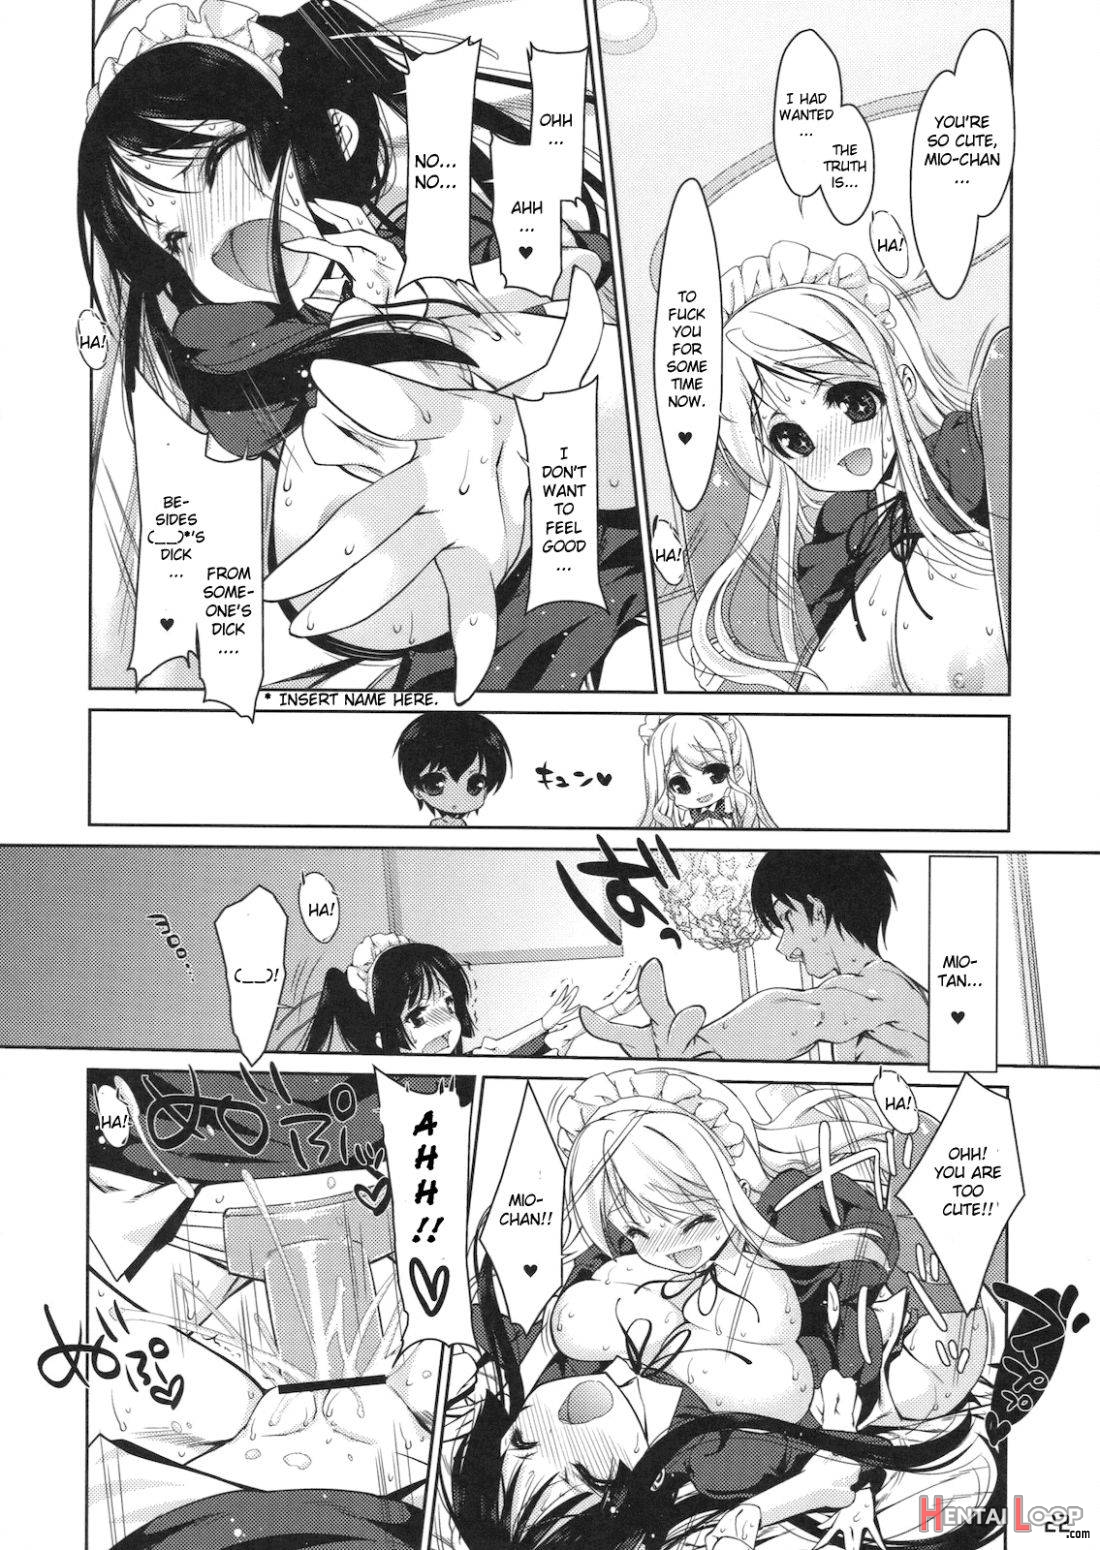 Mio-tan! 6 Mugi-chan to page 18